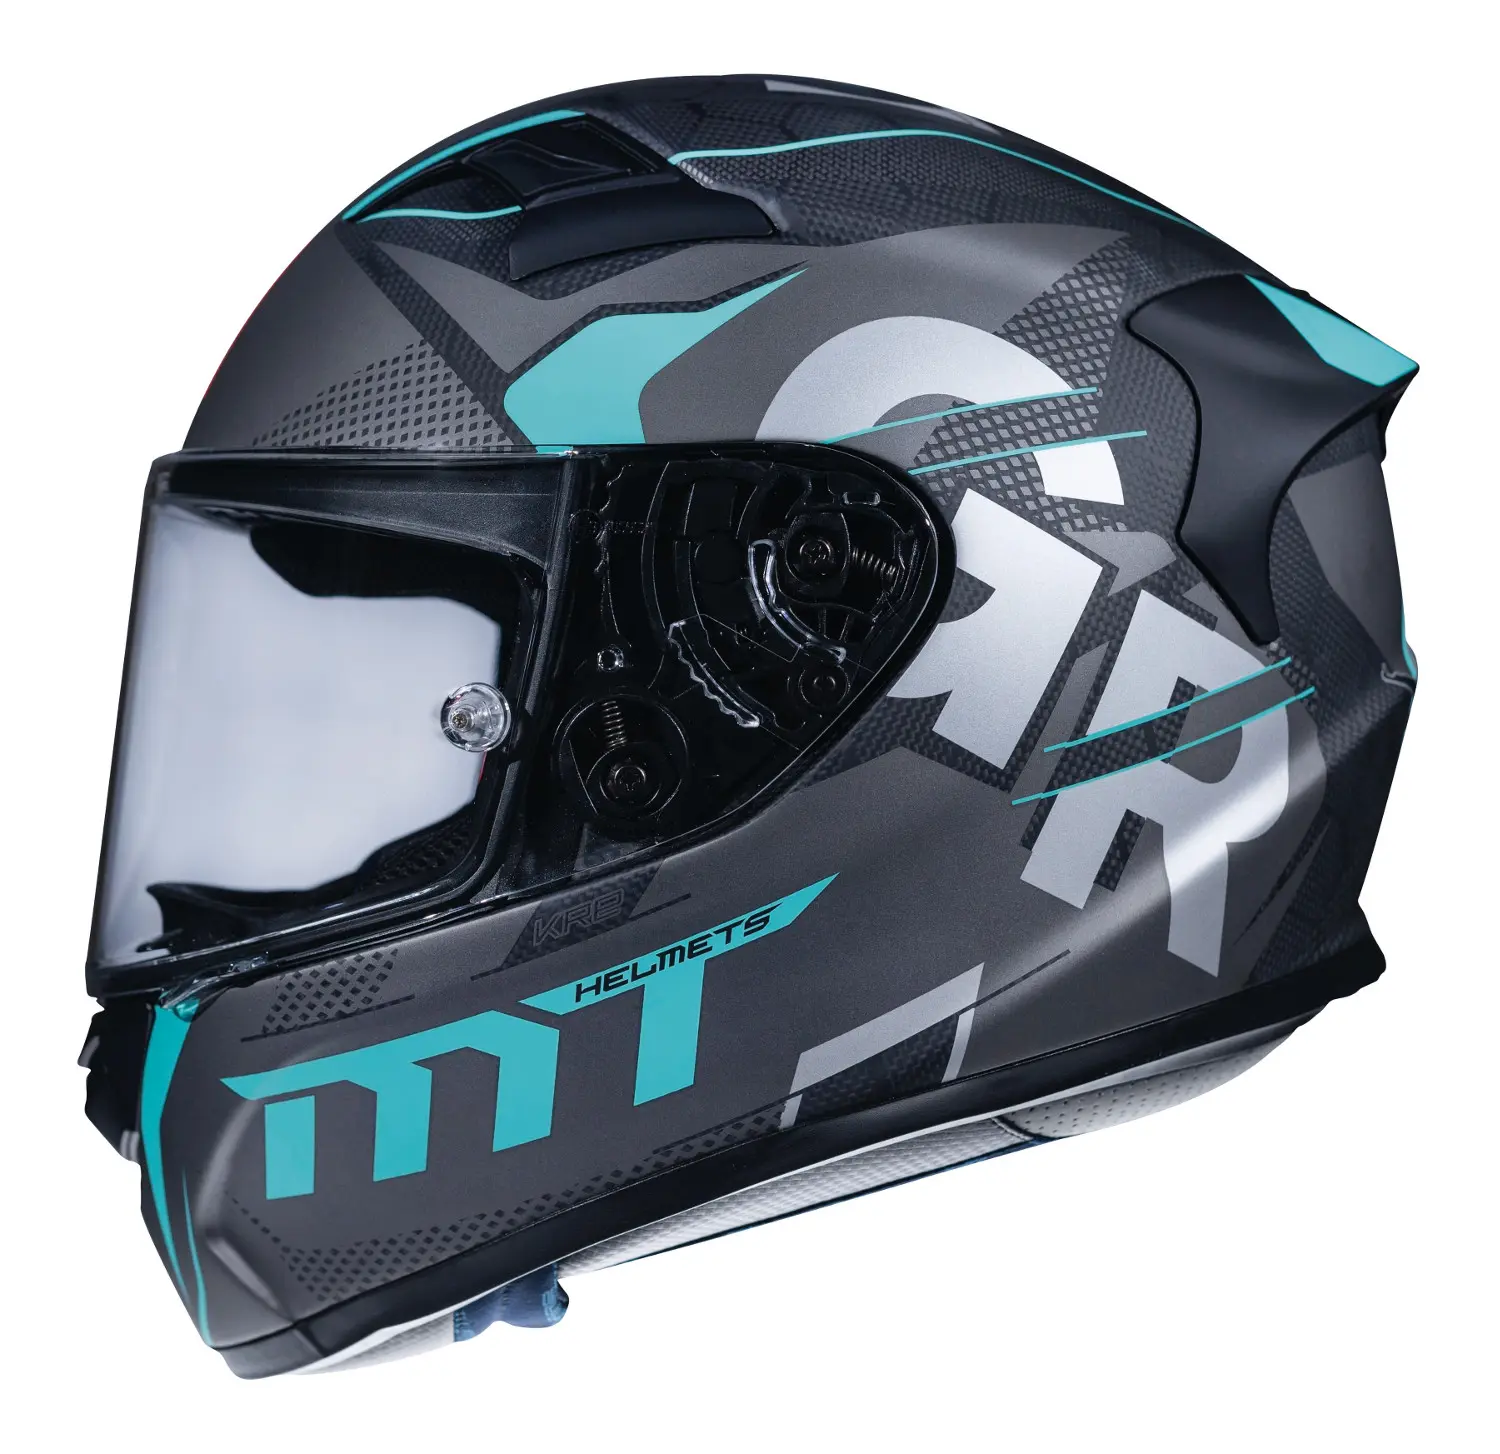 cascos de moto mt - Cuánto pesa un casco MT